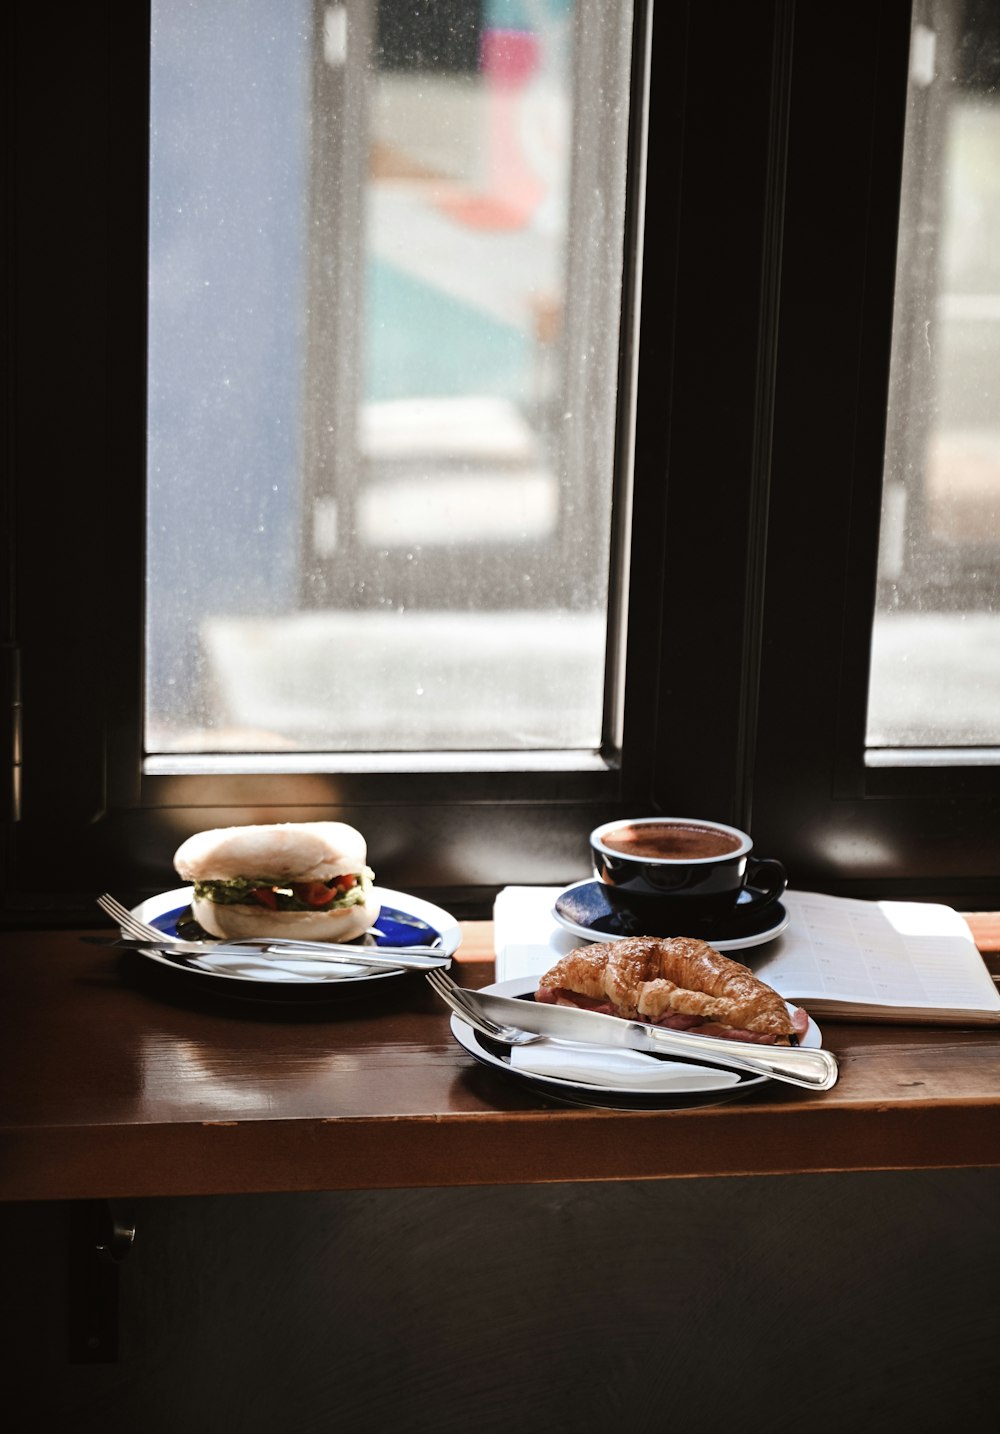 갈색 나무 테이블에 검은 세라믹 머그잔 옆에 흰색 세라믹 접시에 햄버거